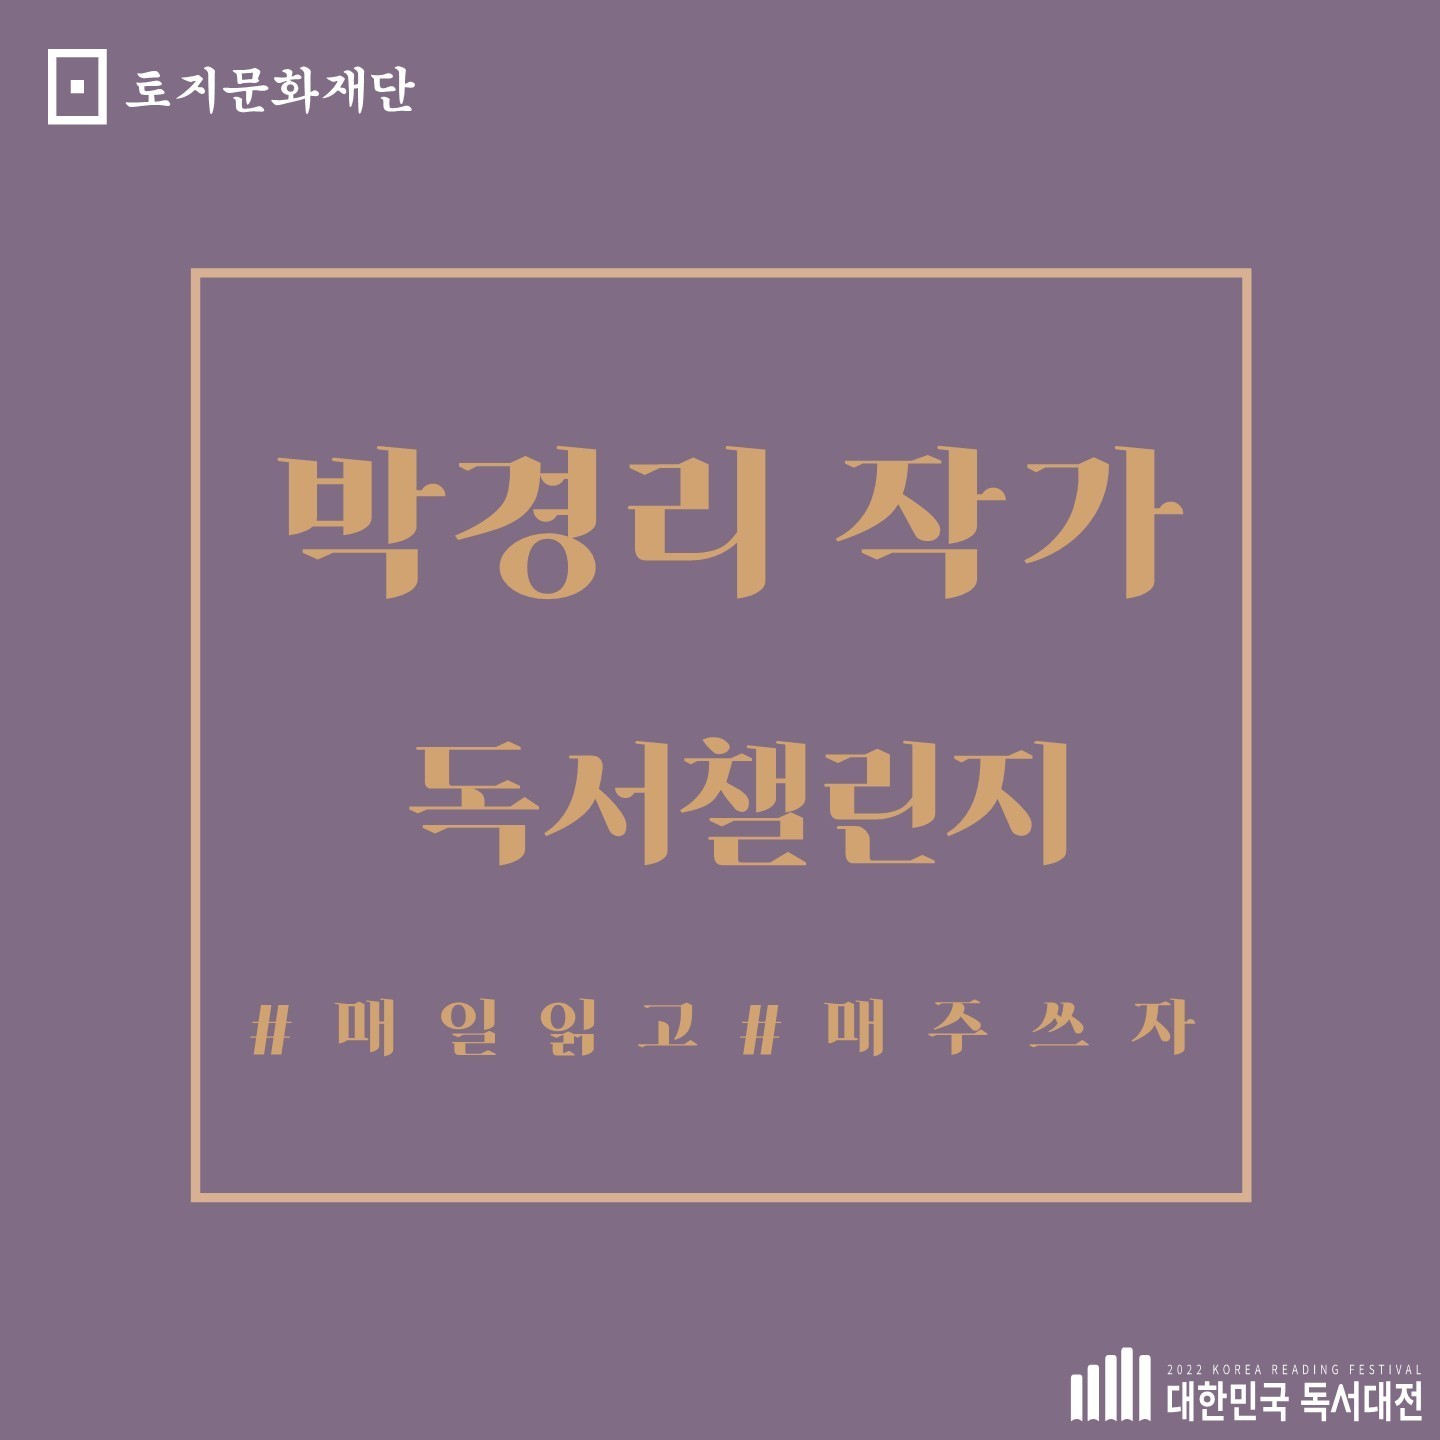 2022 박경리 작가 독서챌린지 <토지 > 3기 모집